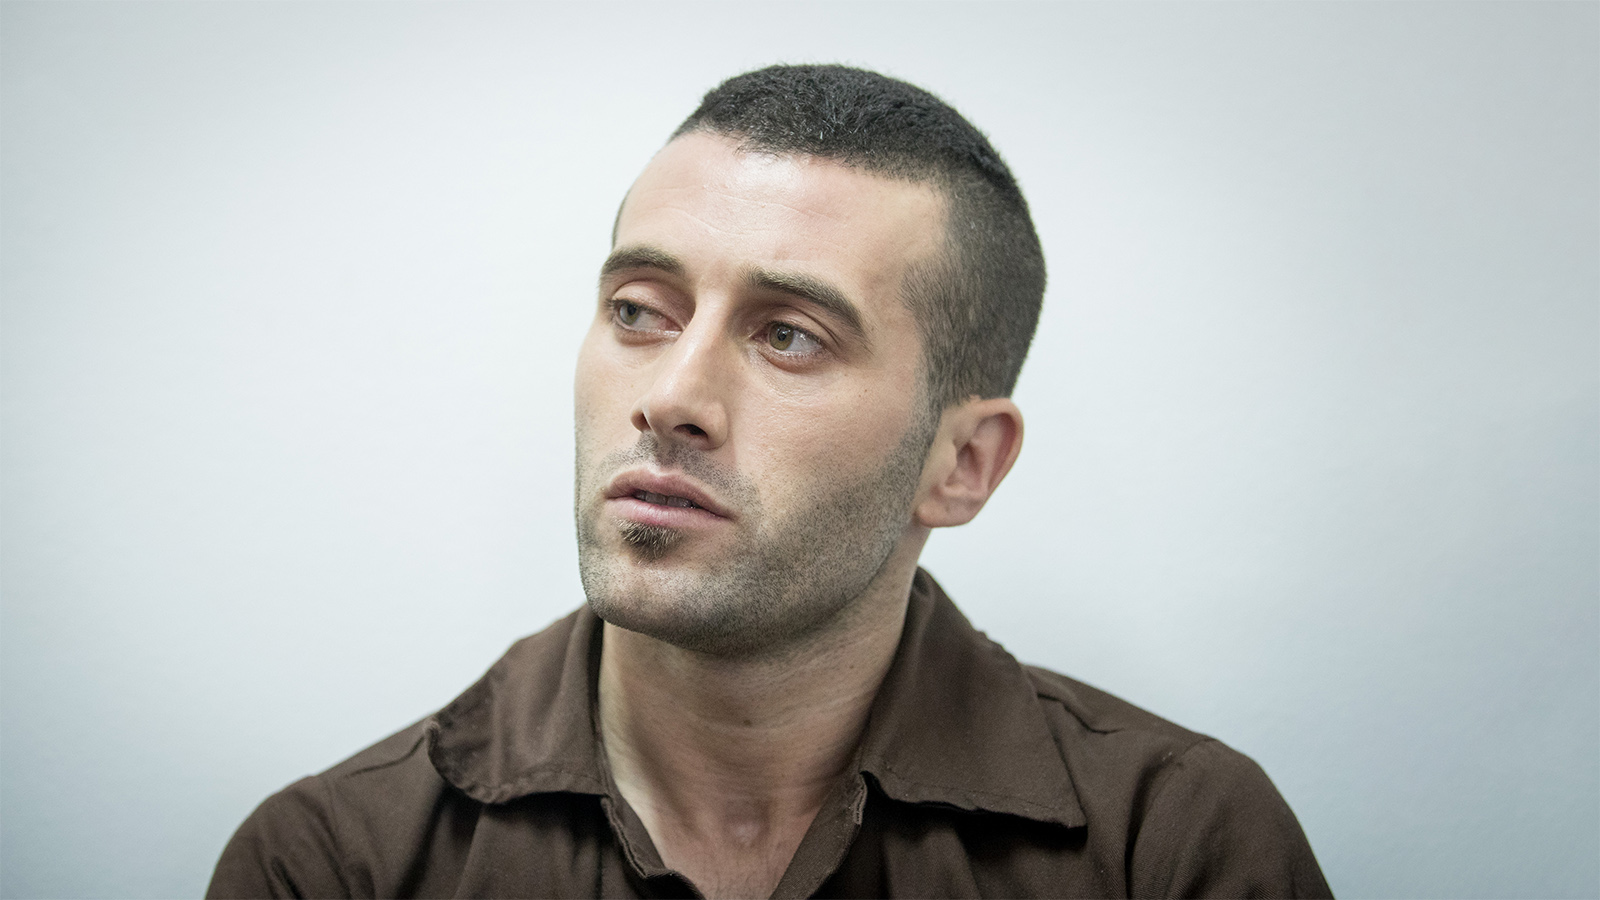 מוחמד חארוף, שהורשע ברצח מיכל חלימי, בבית המשפט בירושלים (צילום: יונתן זינדל/ פלאש 90)